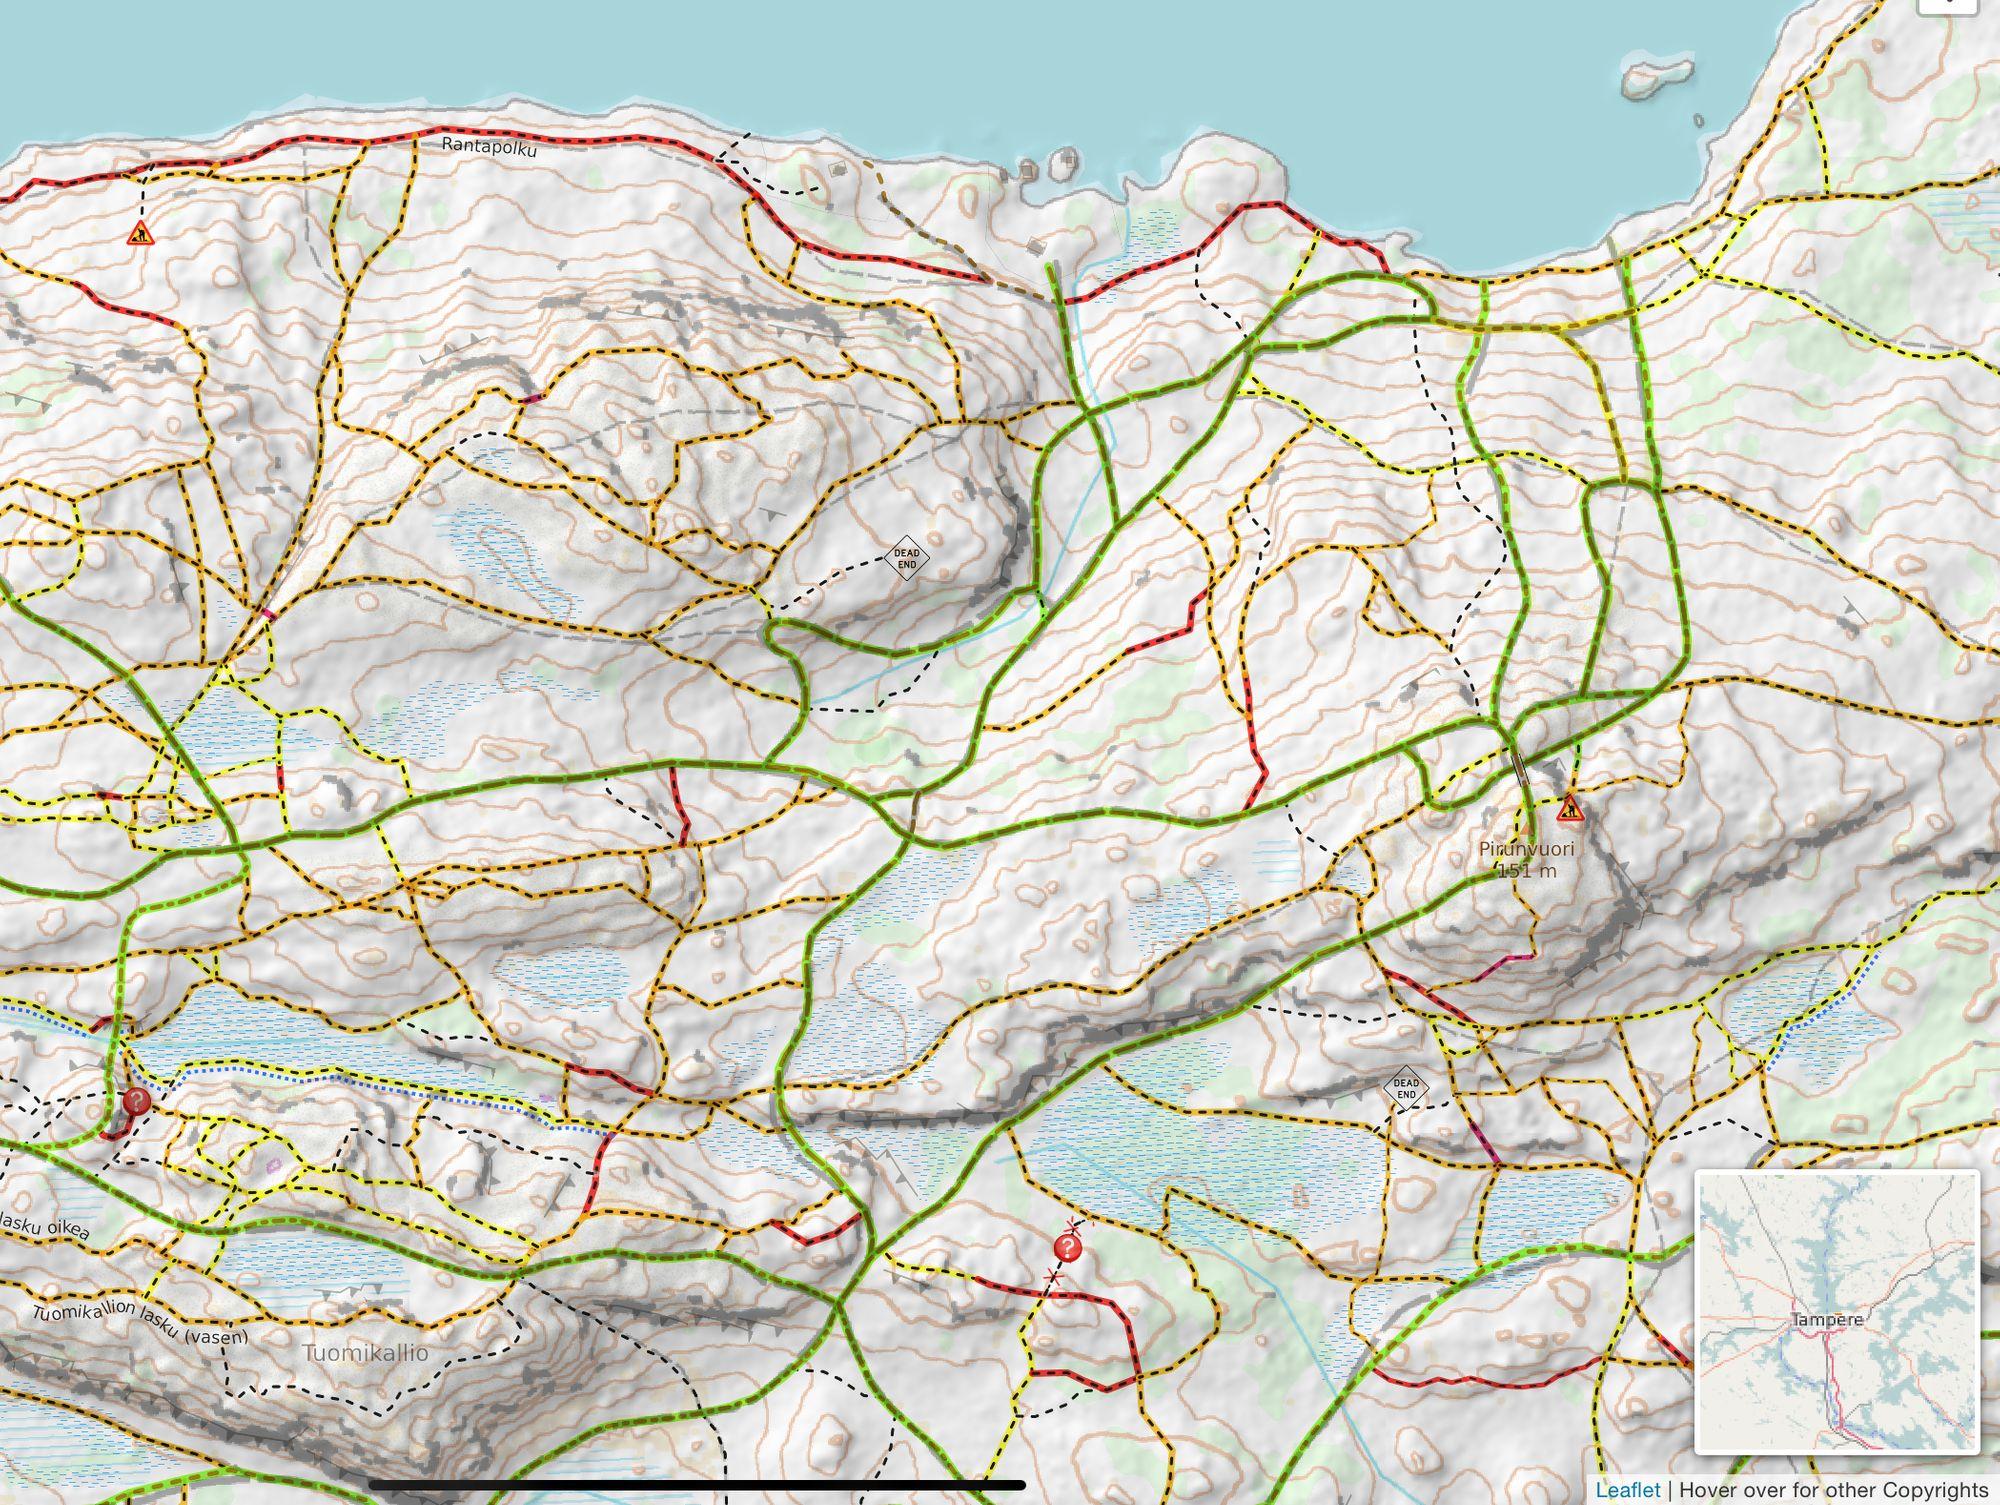 3D MTB Map: Polkujen lisäksi nyt voi myös miettiä mitkä polut haluaa kiivetä ja mitkä laskea